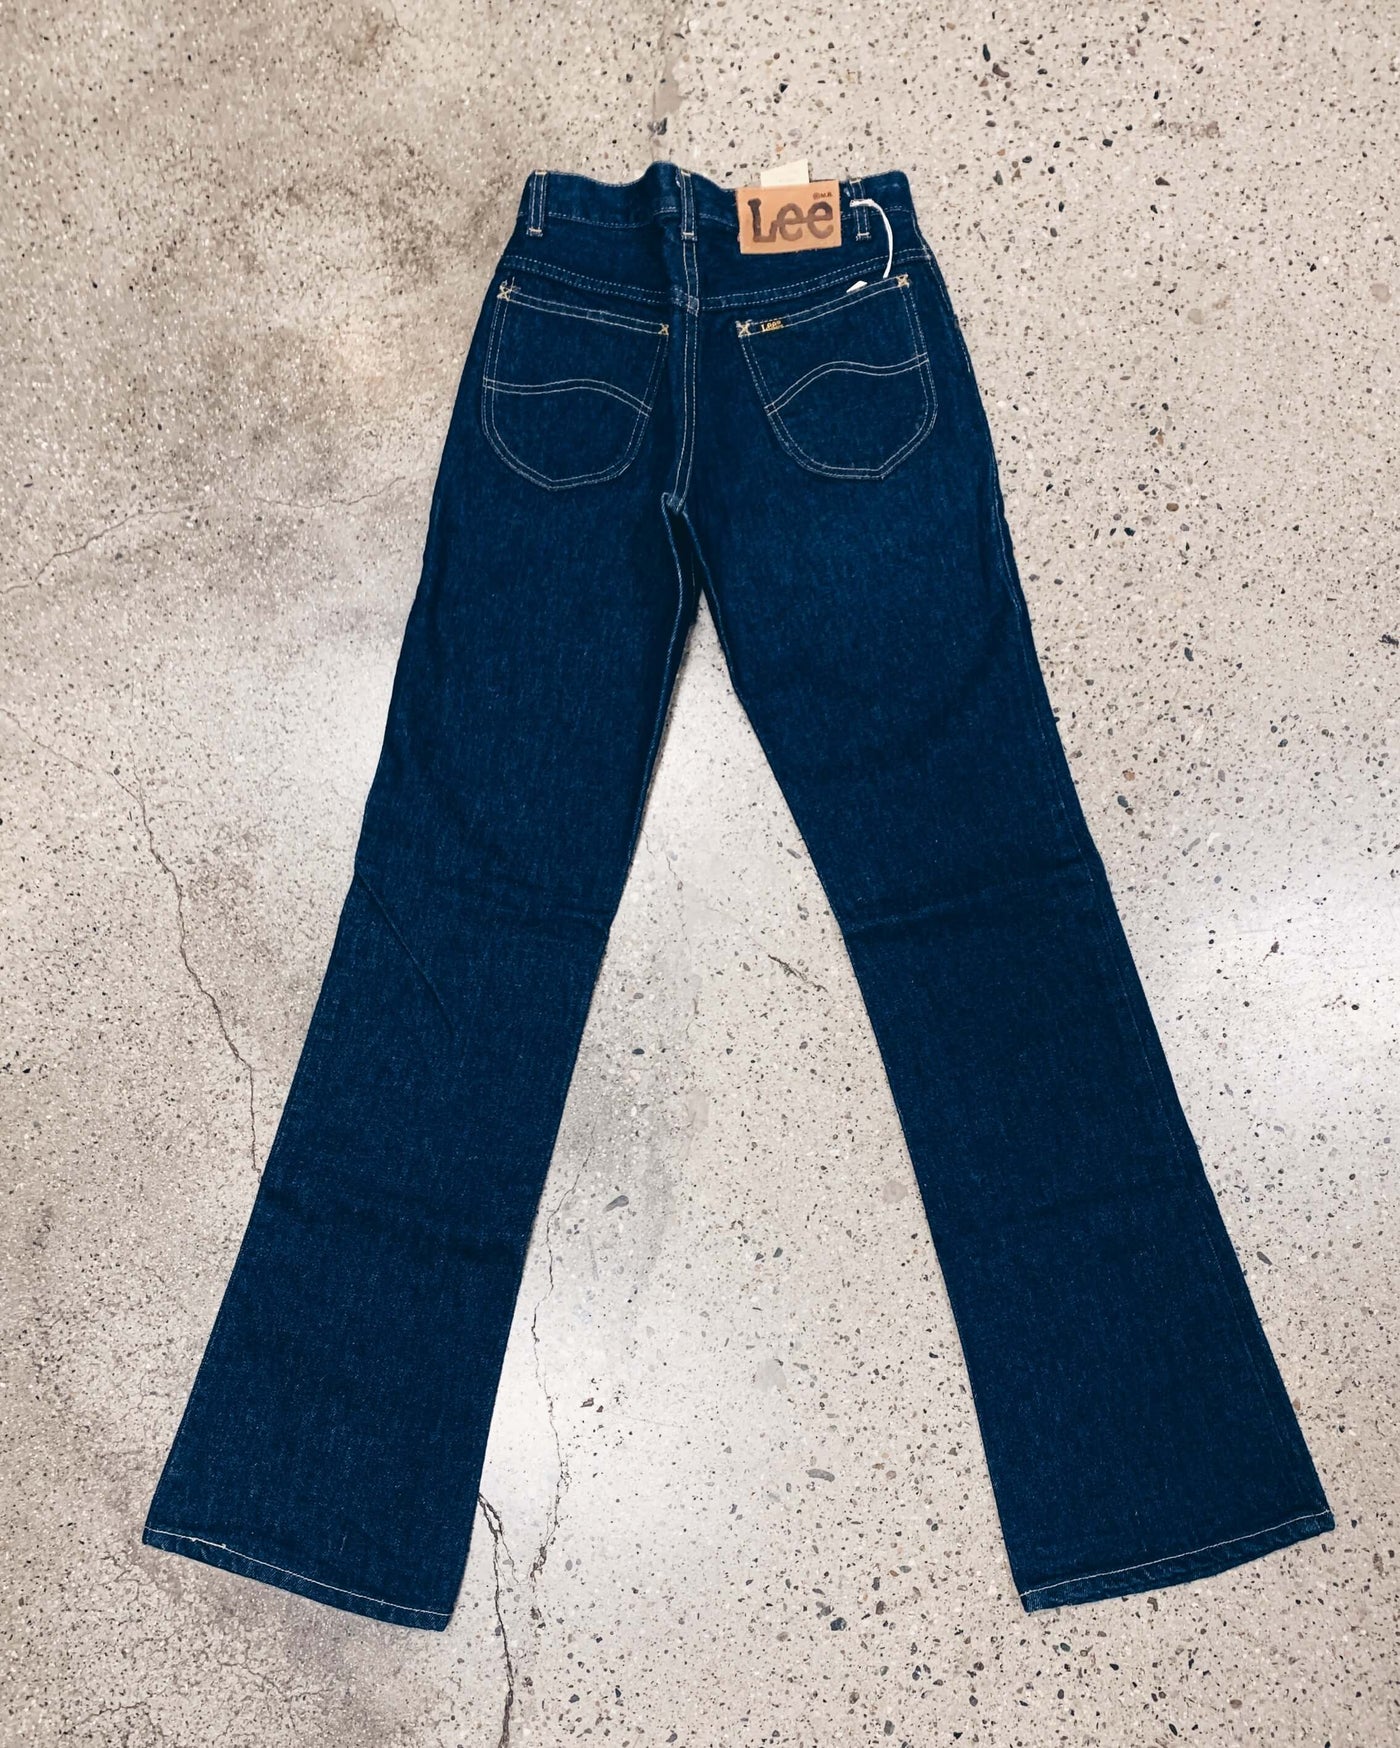 Deadstock Lee 200-0347 Jeans - 28" Waist